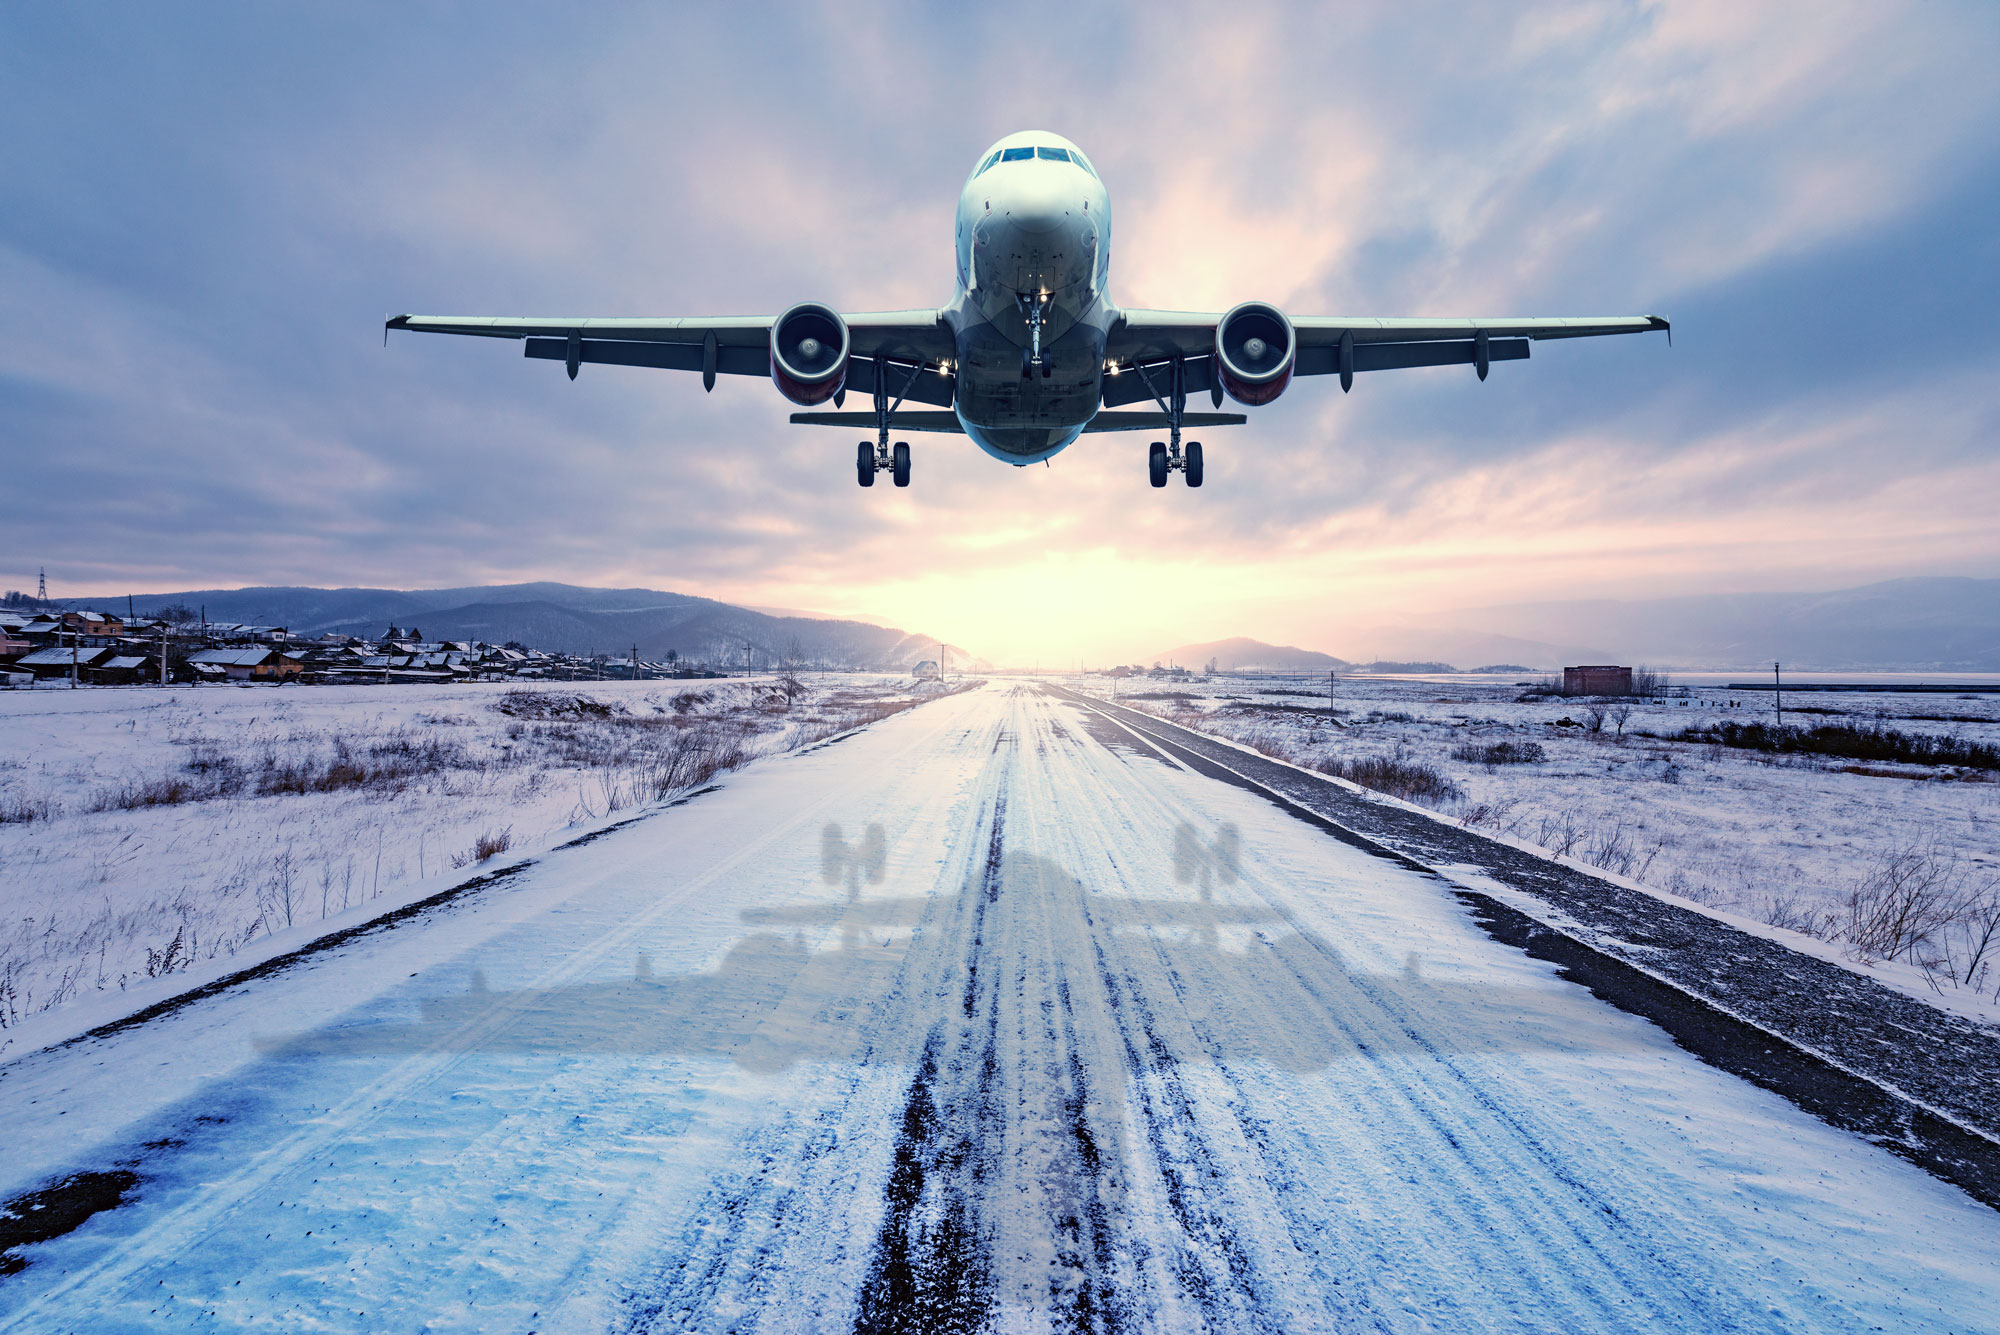 
Airplane landing during winter